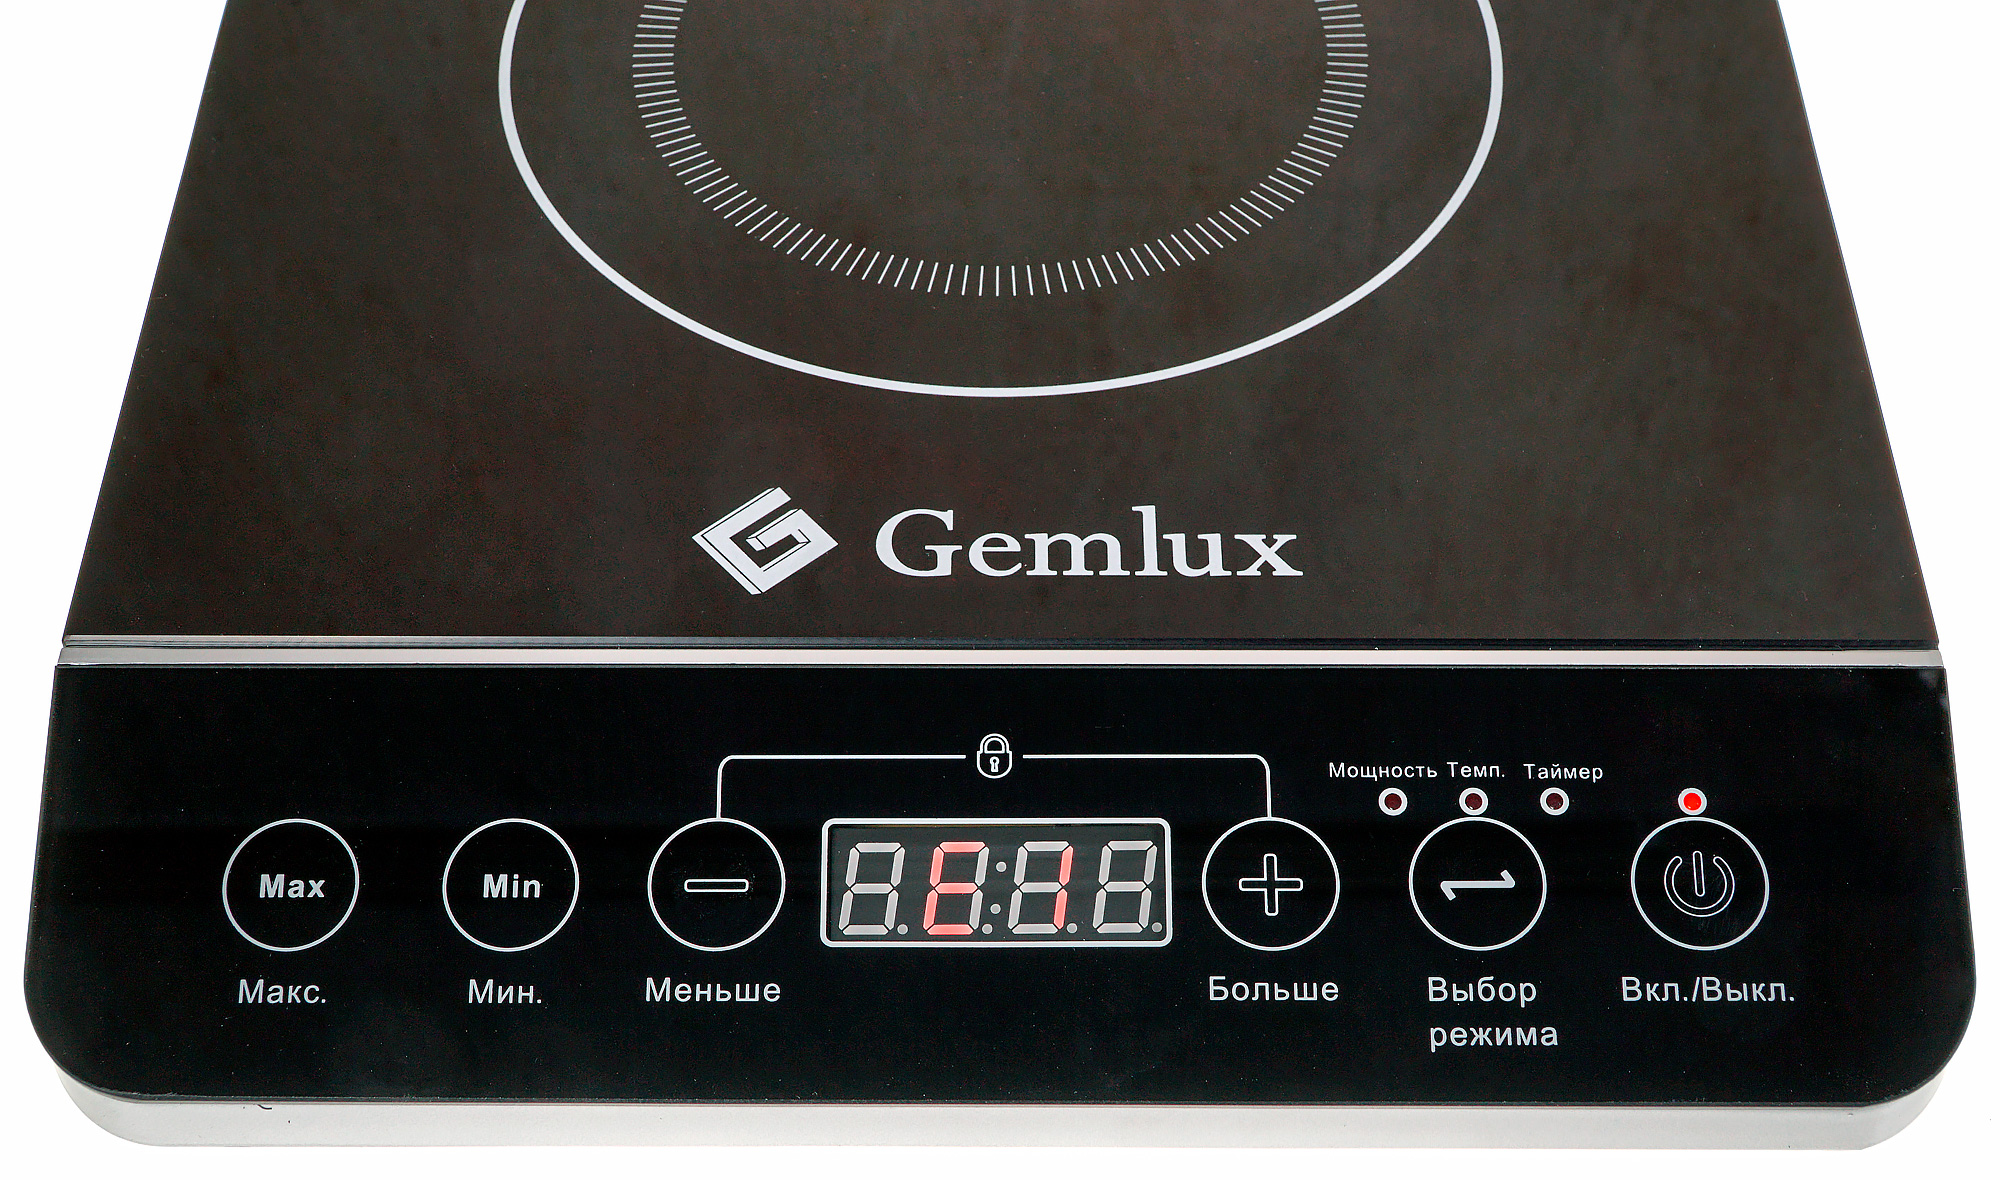 Купить индукционную авито. Плитка индукционная Gemlux gl-ip20a. Индукционная плита BT-350t. Электрическая плита Gemlux gl-ip20a. Индукционная плита Gemlux 3.5 КВТ.